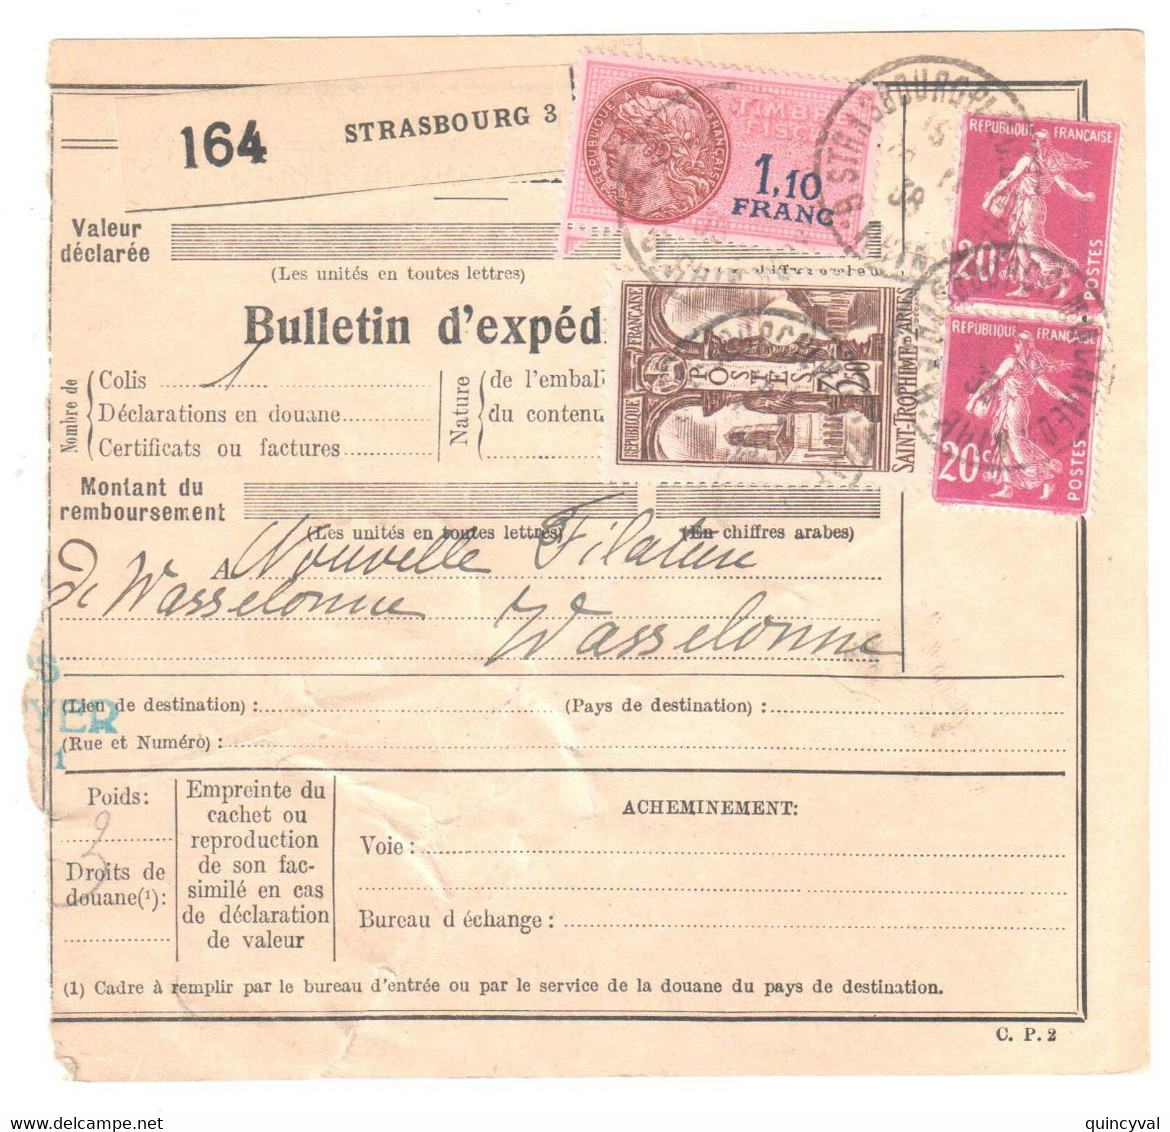 STRASBOURG Bas Rhin Bulletin D'expédition Alsace Lorraine 1938 3,50 F St Trophime 20c Semeuse Yv 302 139 - Cartas & Documentos